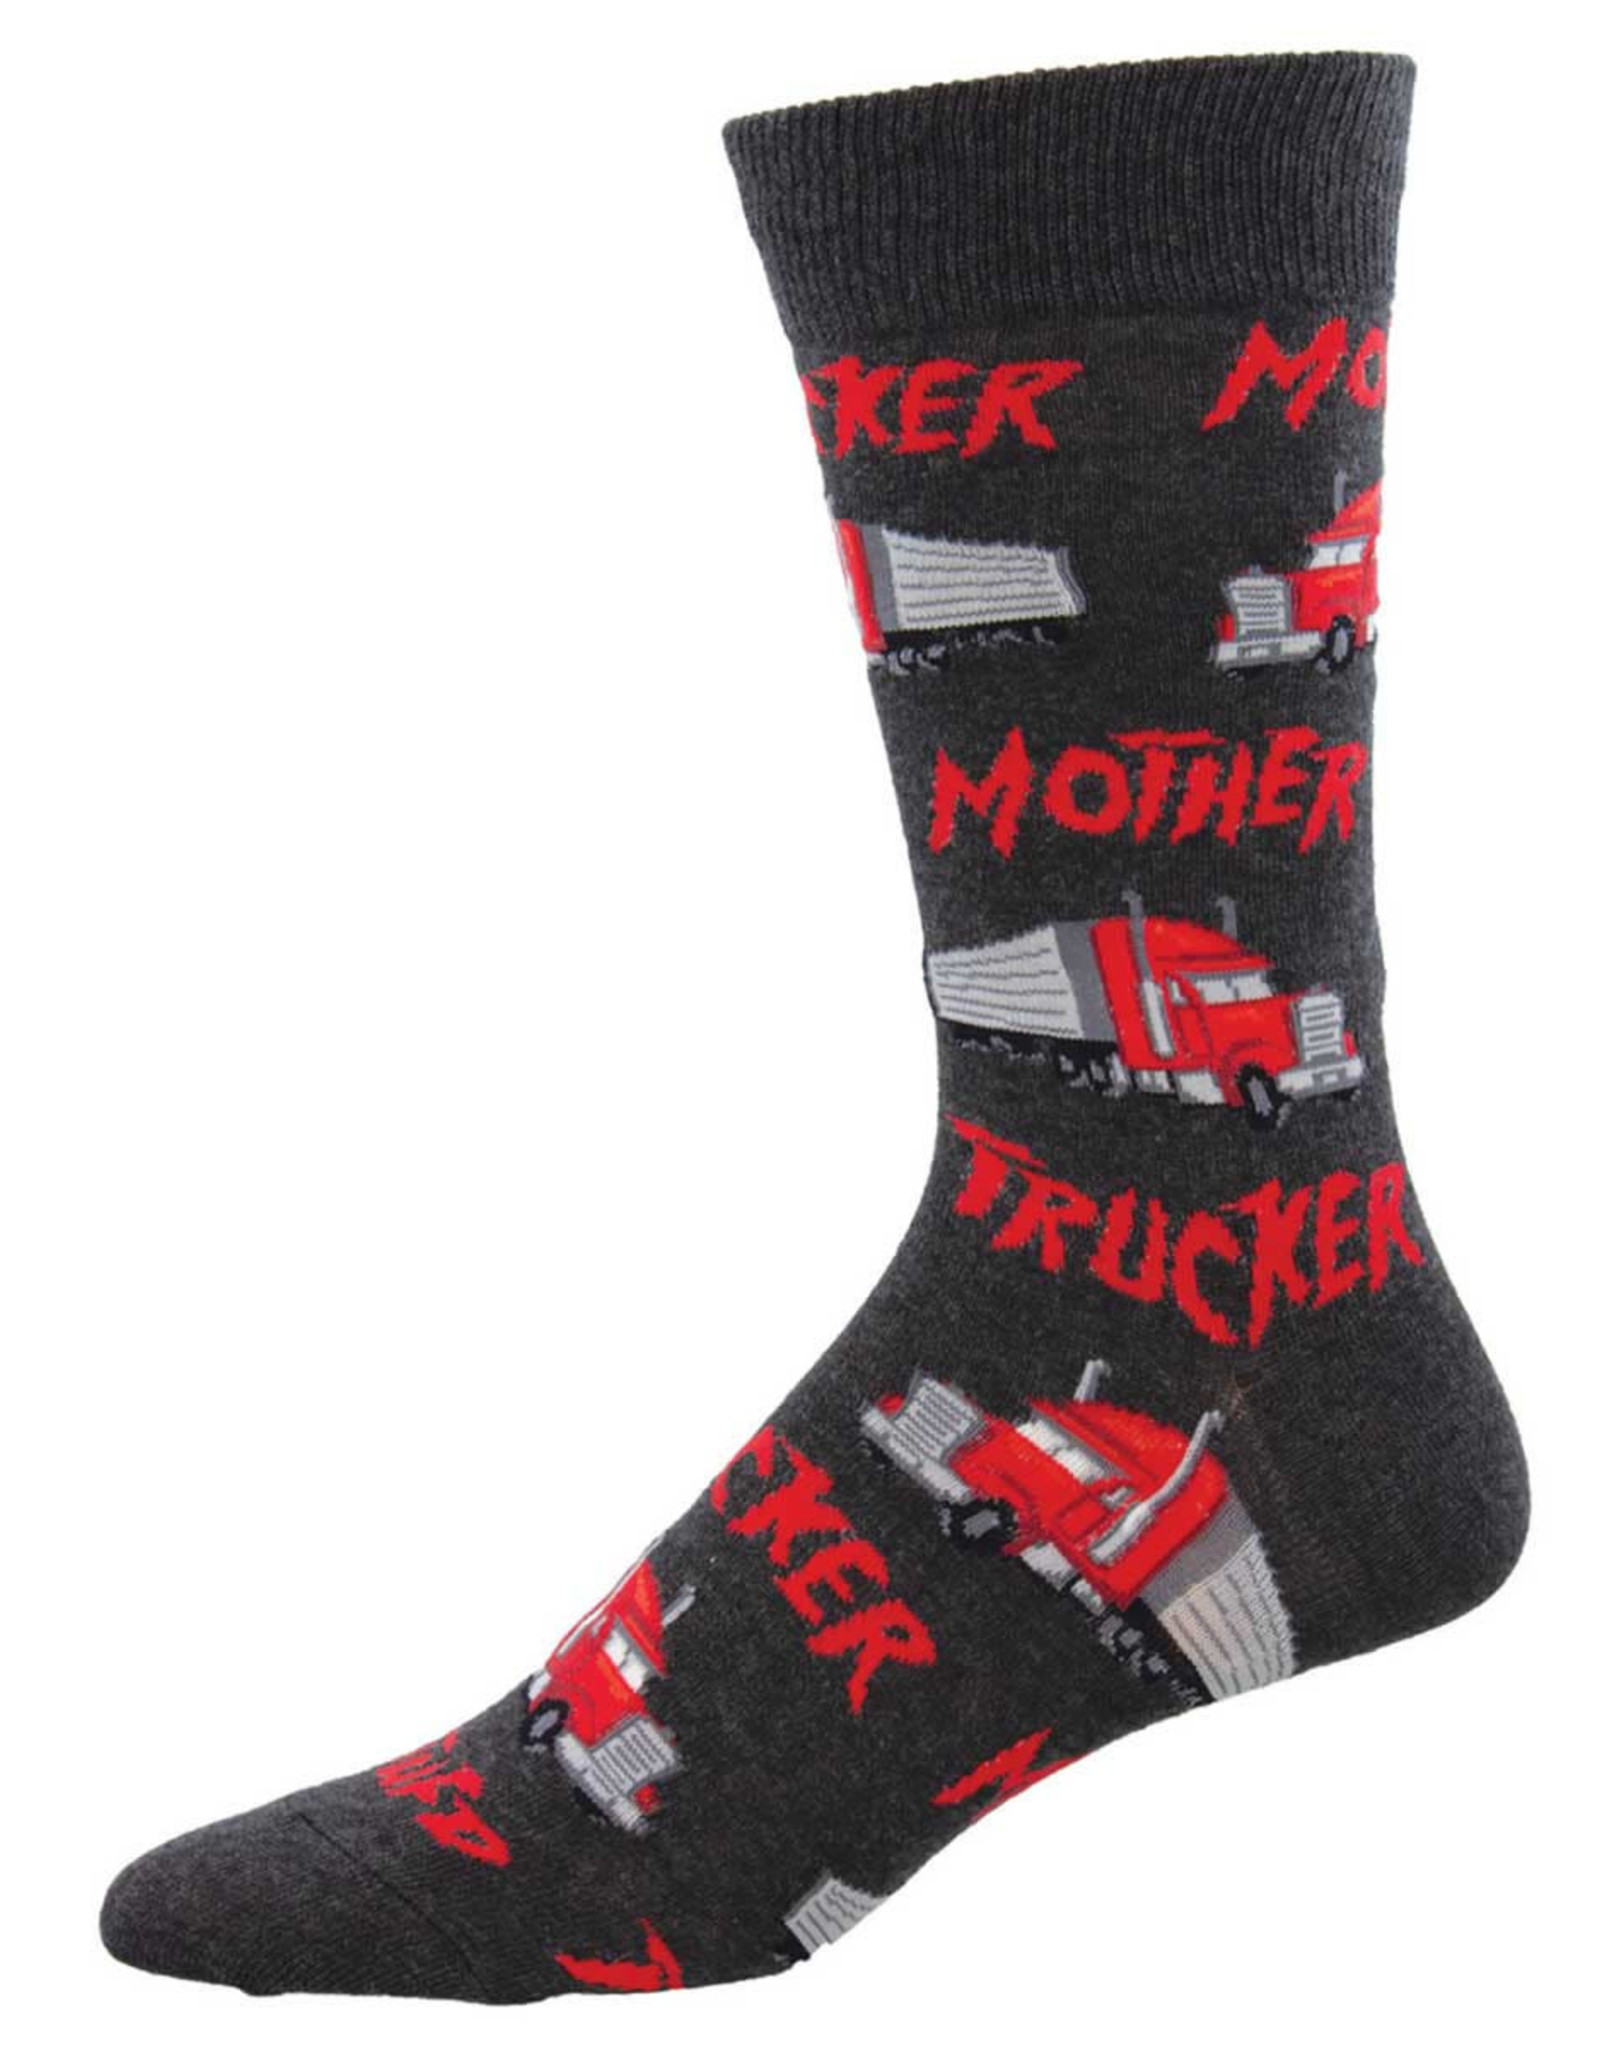 Socksmith Men's Mother Trucker Socks